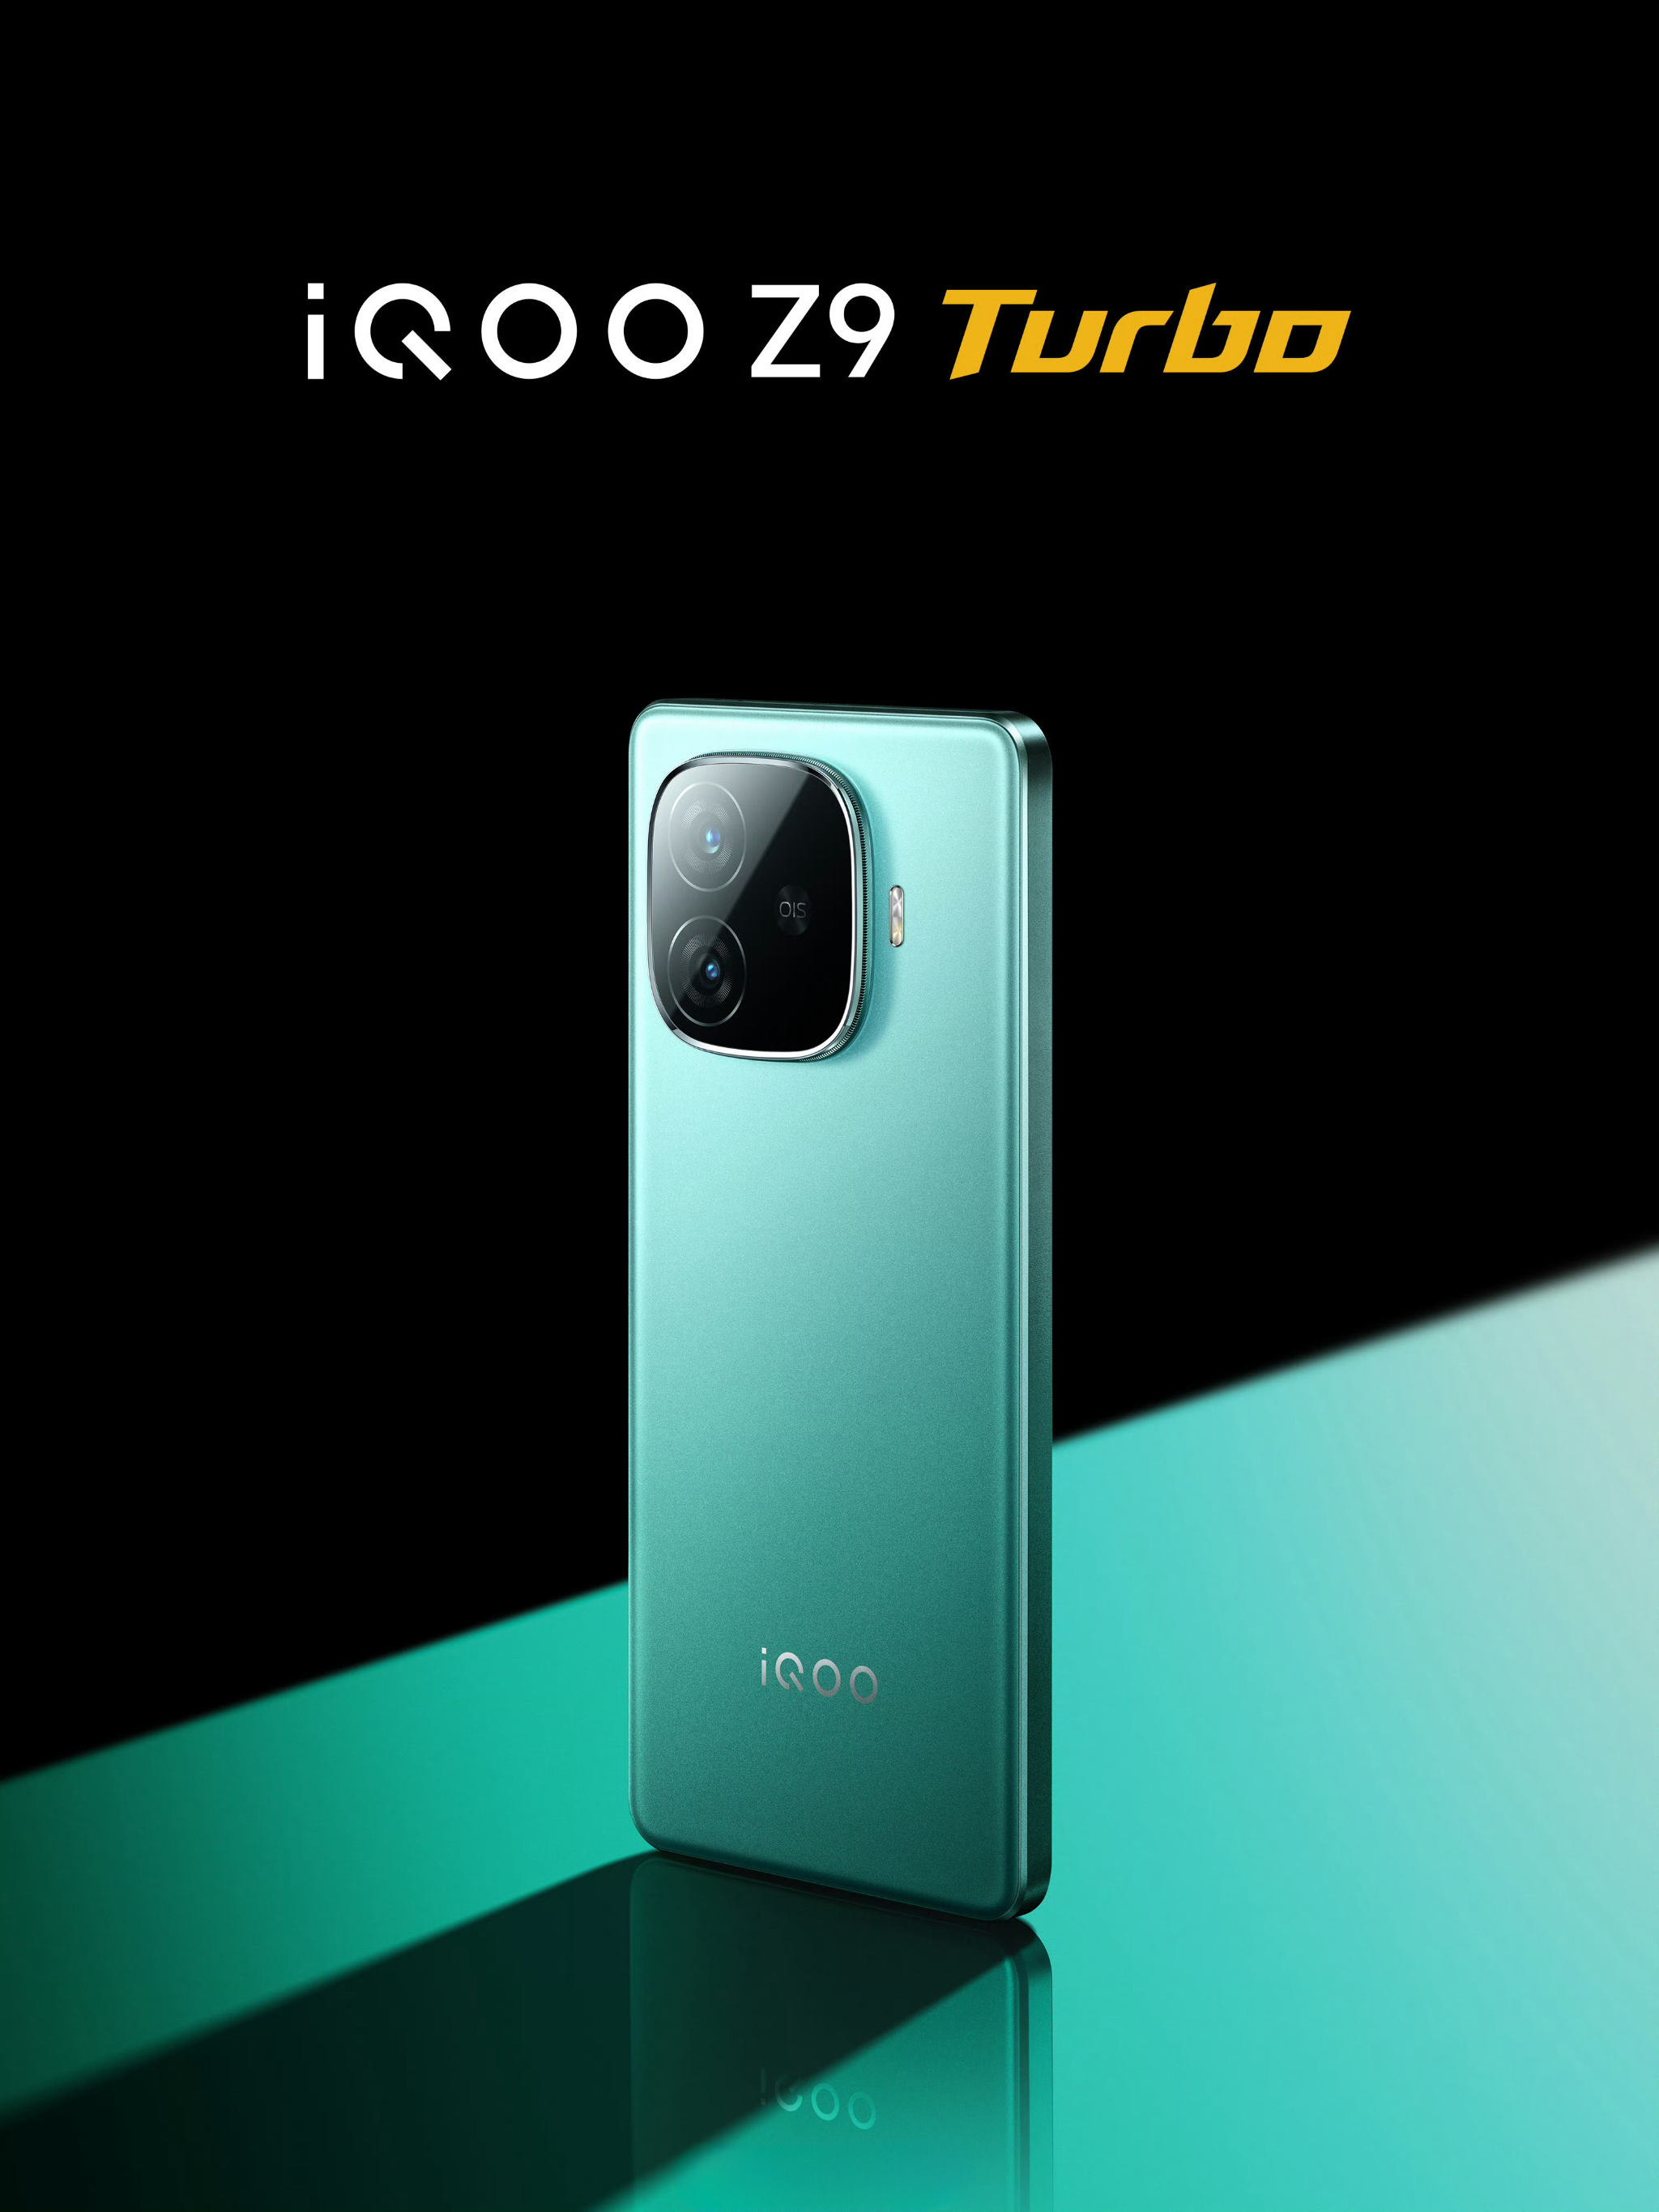 iqoo-z9-turbo-thiet-ke-iqoo-mau-xanh-la.jpg